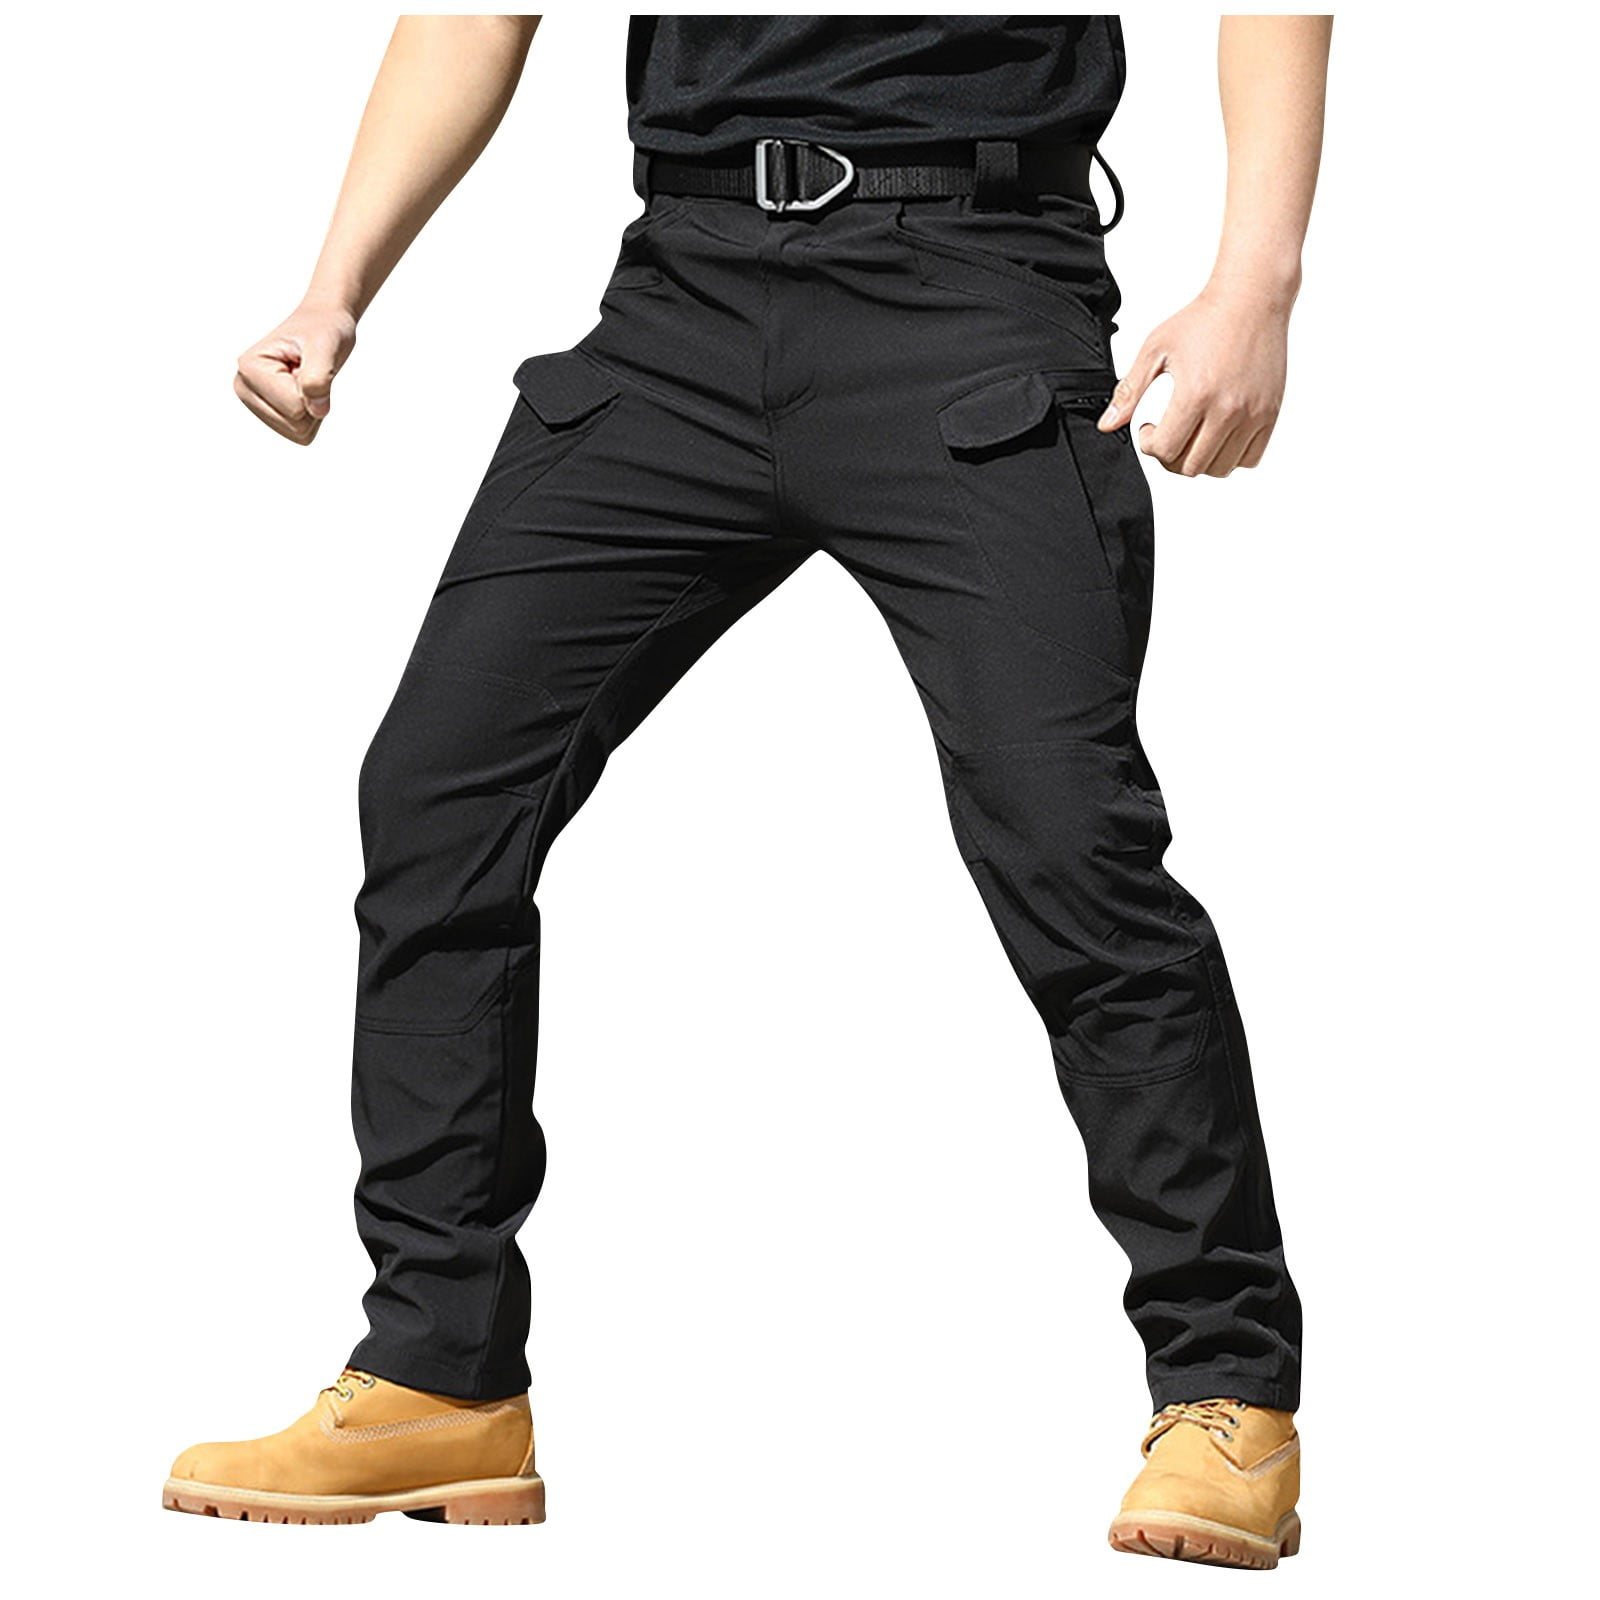 Black Men'S Pants Mens Fashion Casual Loose Cotton Plus Size Pocket Lace Up  Elastic Waist Pants Trousers - Walmart.com